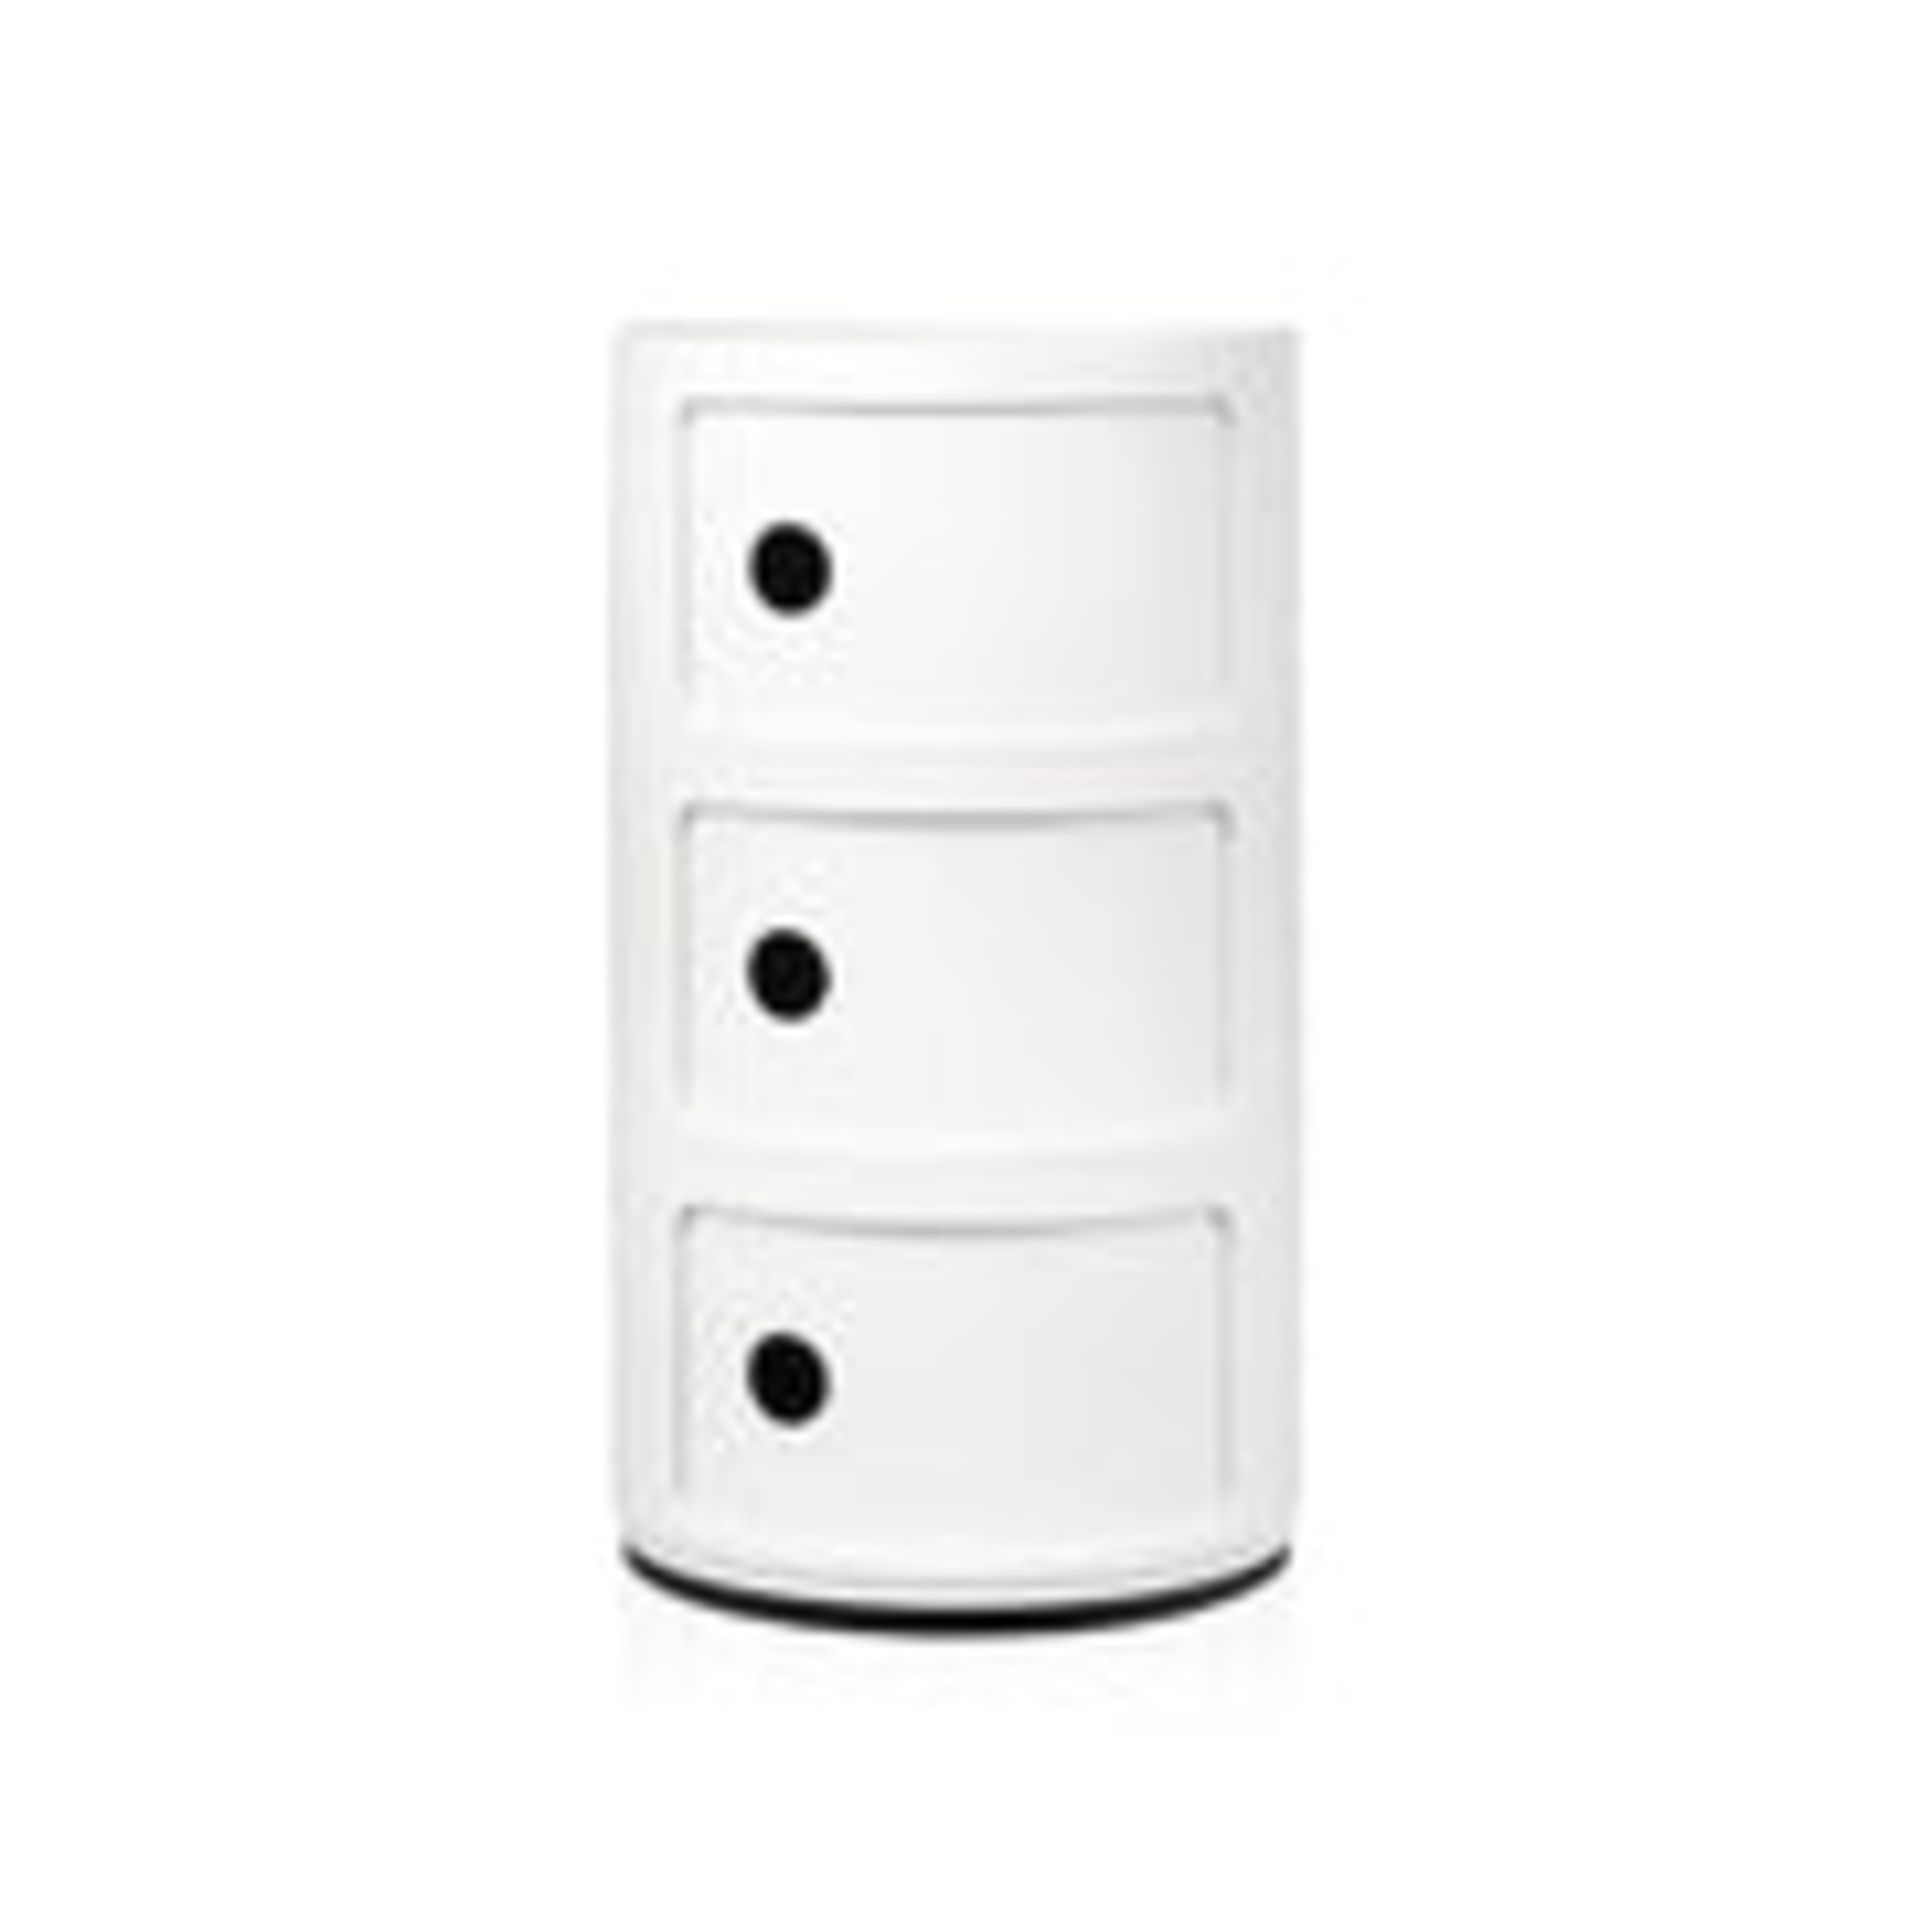 1 x 3 Tier Componibili Storage Unit White - Dimensions: 32(w) x 32(d) x 60(h) cm - Brand New Boxed S